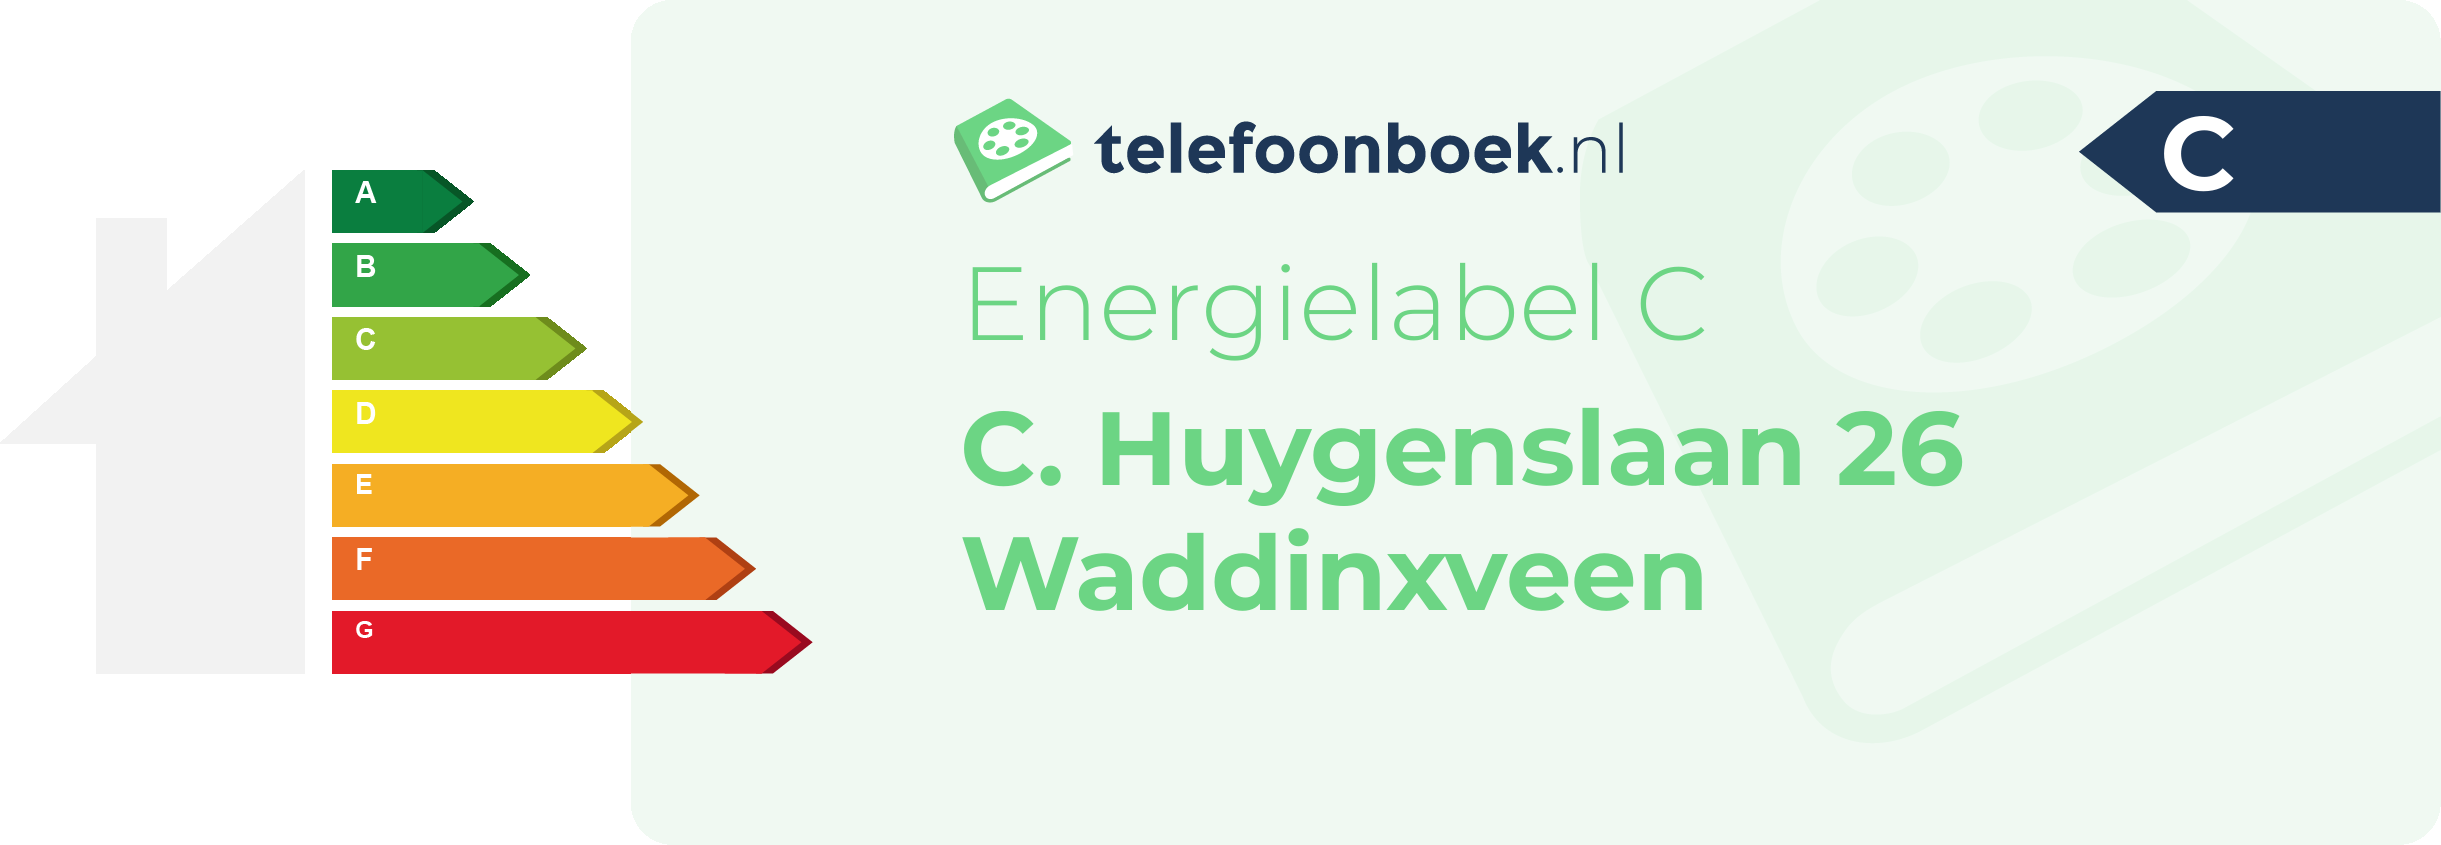 Energielabel C. Huygenslaan 26 Waddinxveen